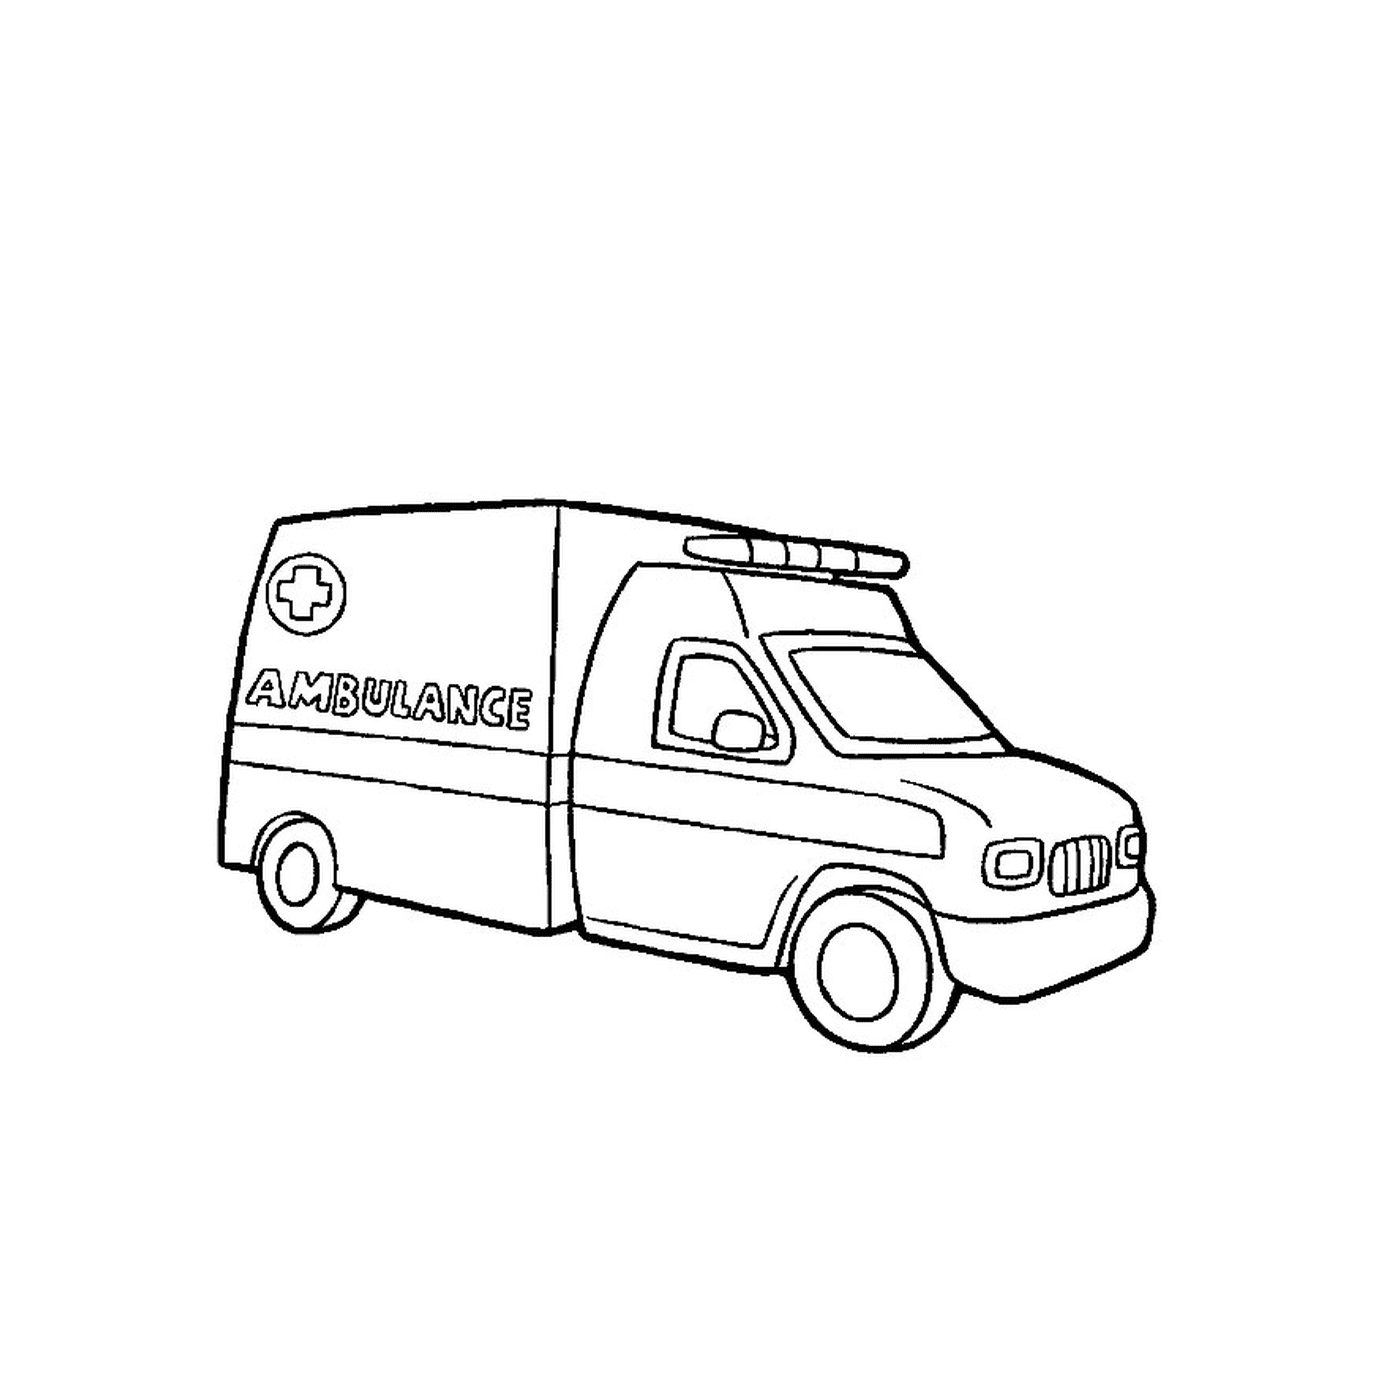  Drawing of an ambulance 